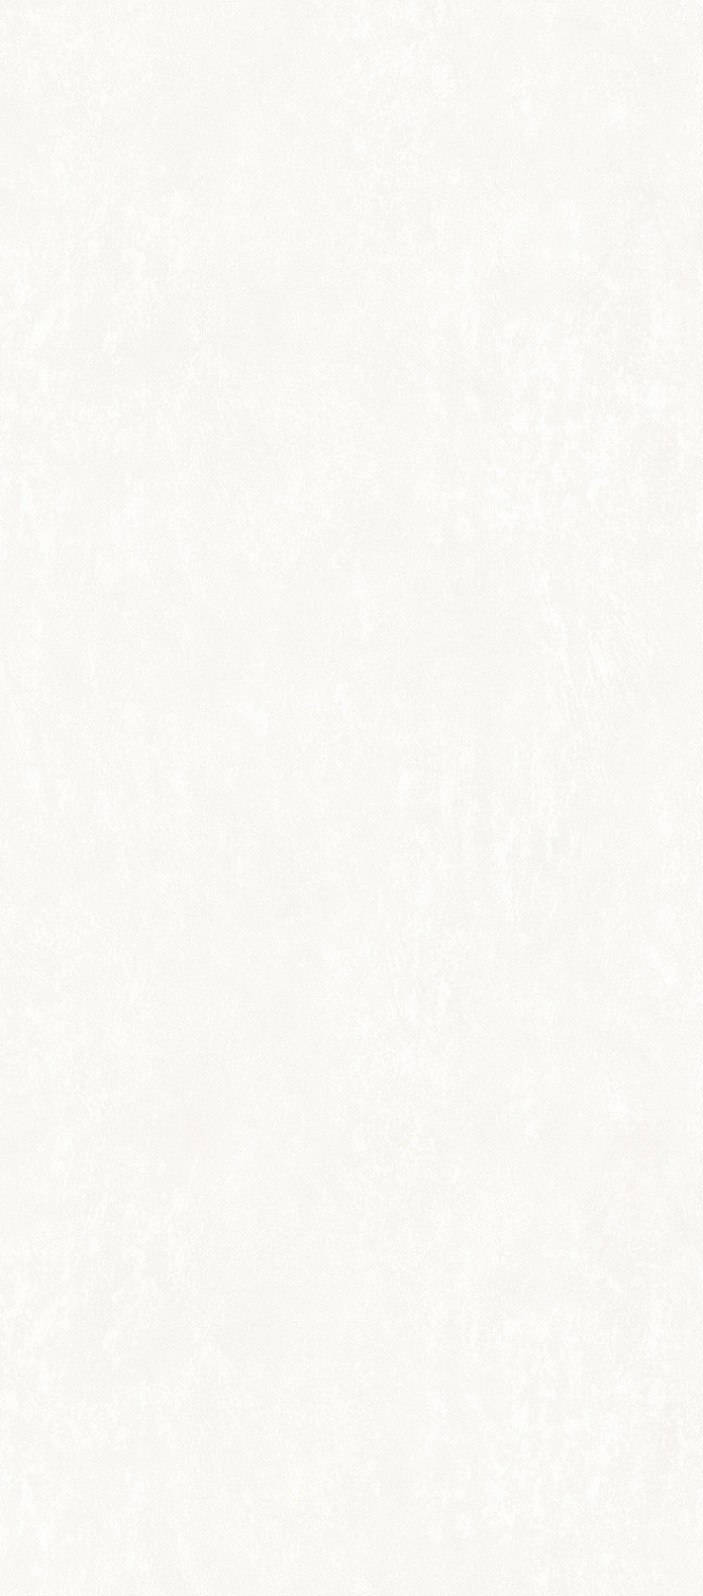 Comprar Losas estructuradas metálicas en color blanco hielo, Losas estructuradas metálicas en color blanco hielo Precios, Losas estructuradas metálicas en color blanco hielo Marcas, Losas estructuradas metálicas en color blanco hielo Fabricante, Losas estructuradas metálicas en color blanco hielo Citas, Losas estructuradas metálicas en color blanco hielo Empresa.